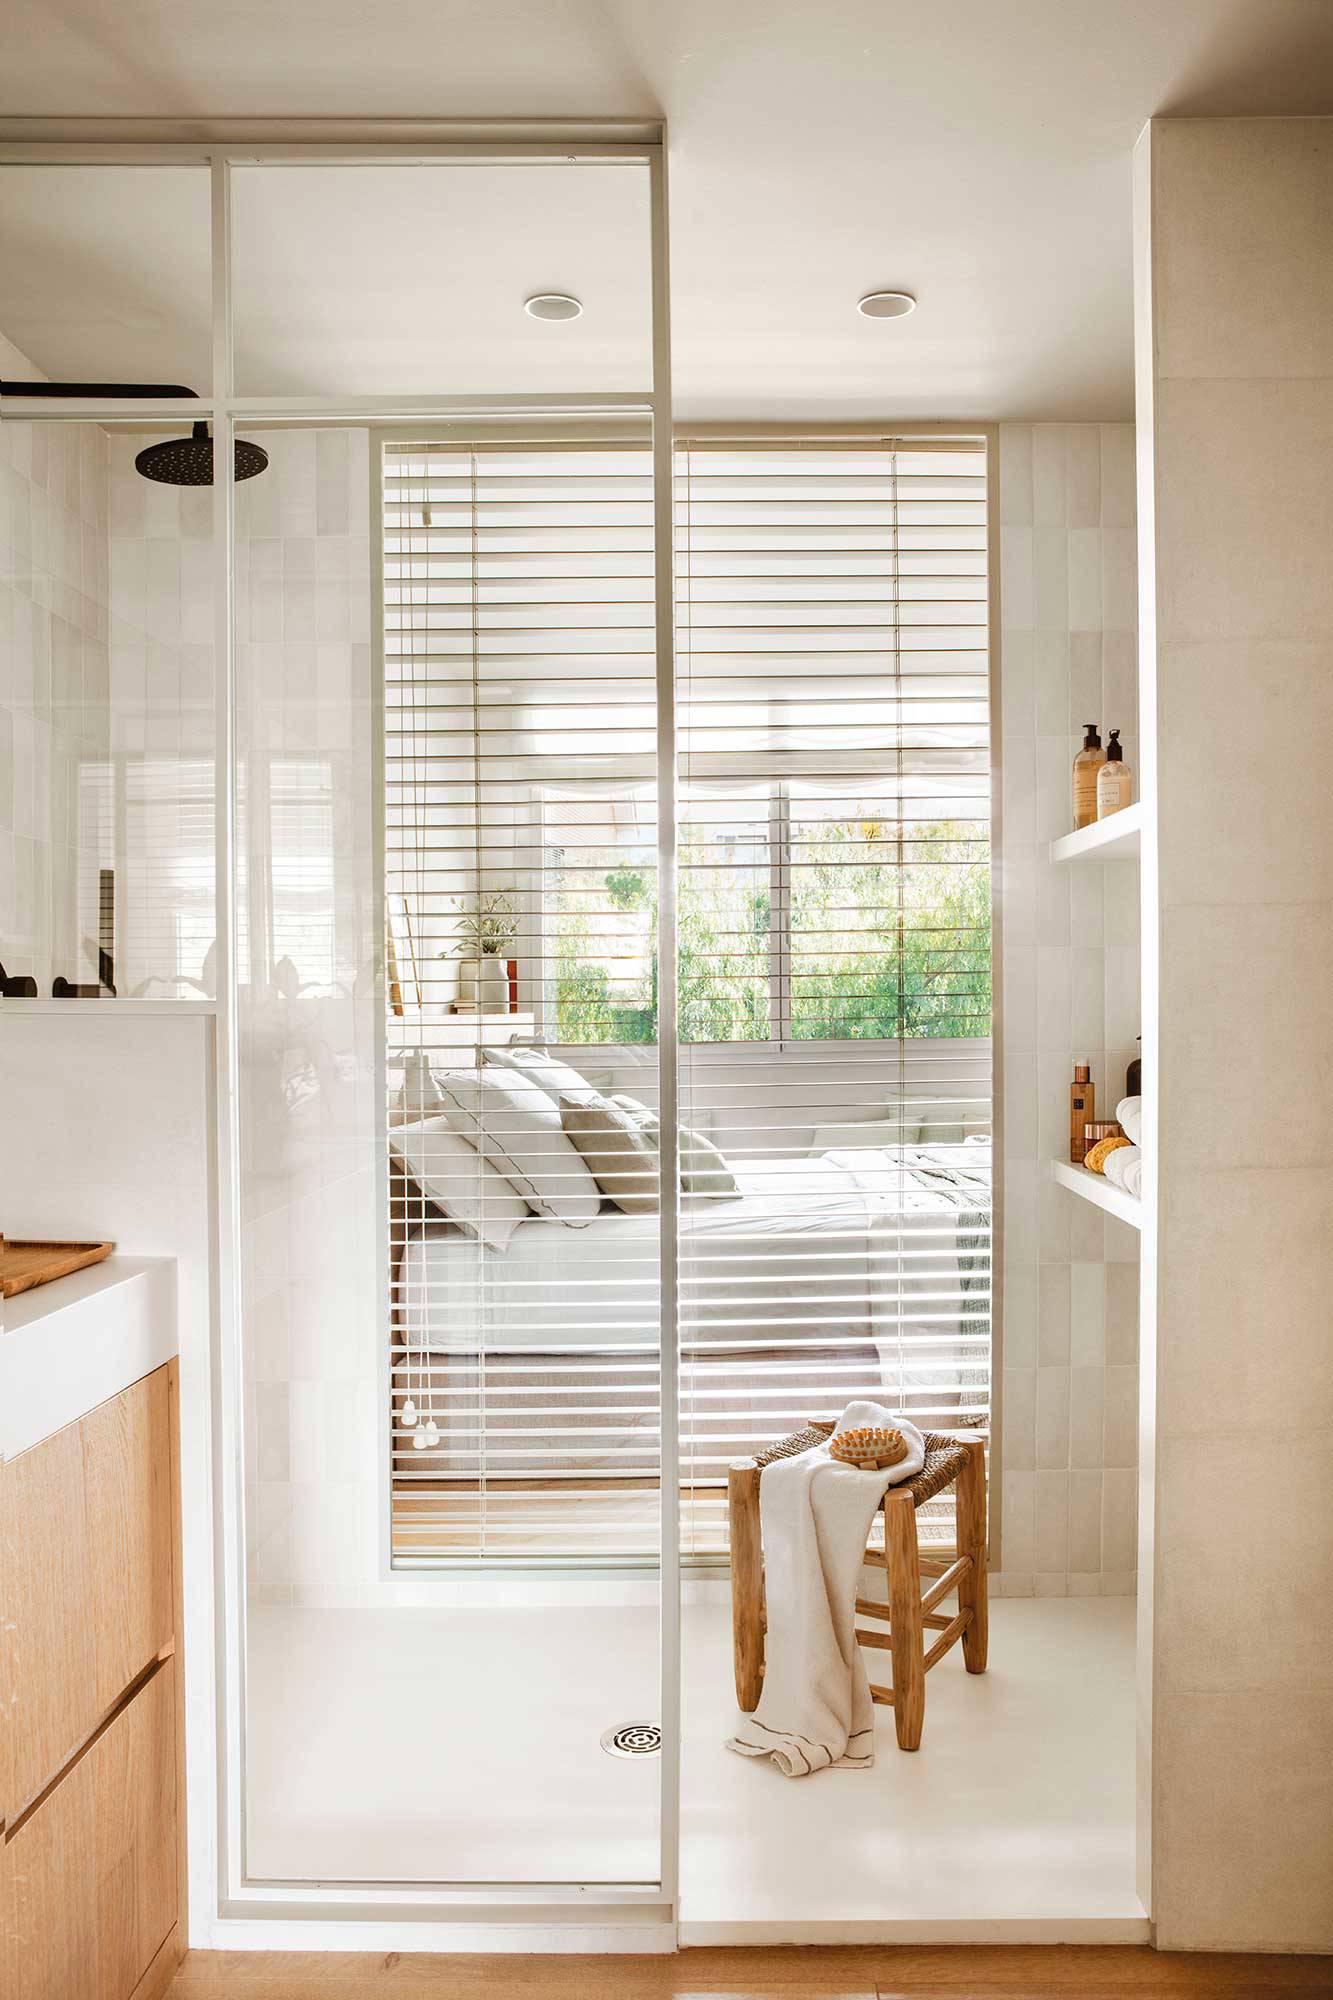 Baño pequeño con pared acristalada de la ducha que comunica con el dormitorio